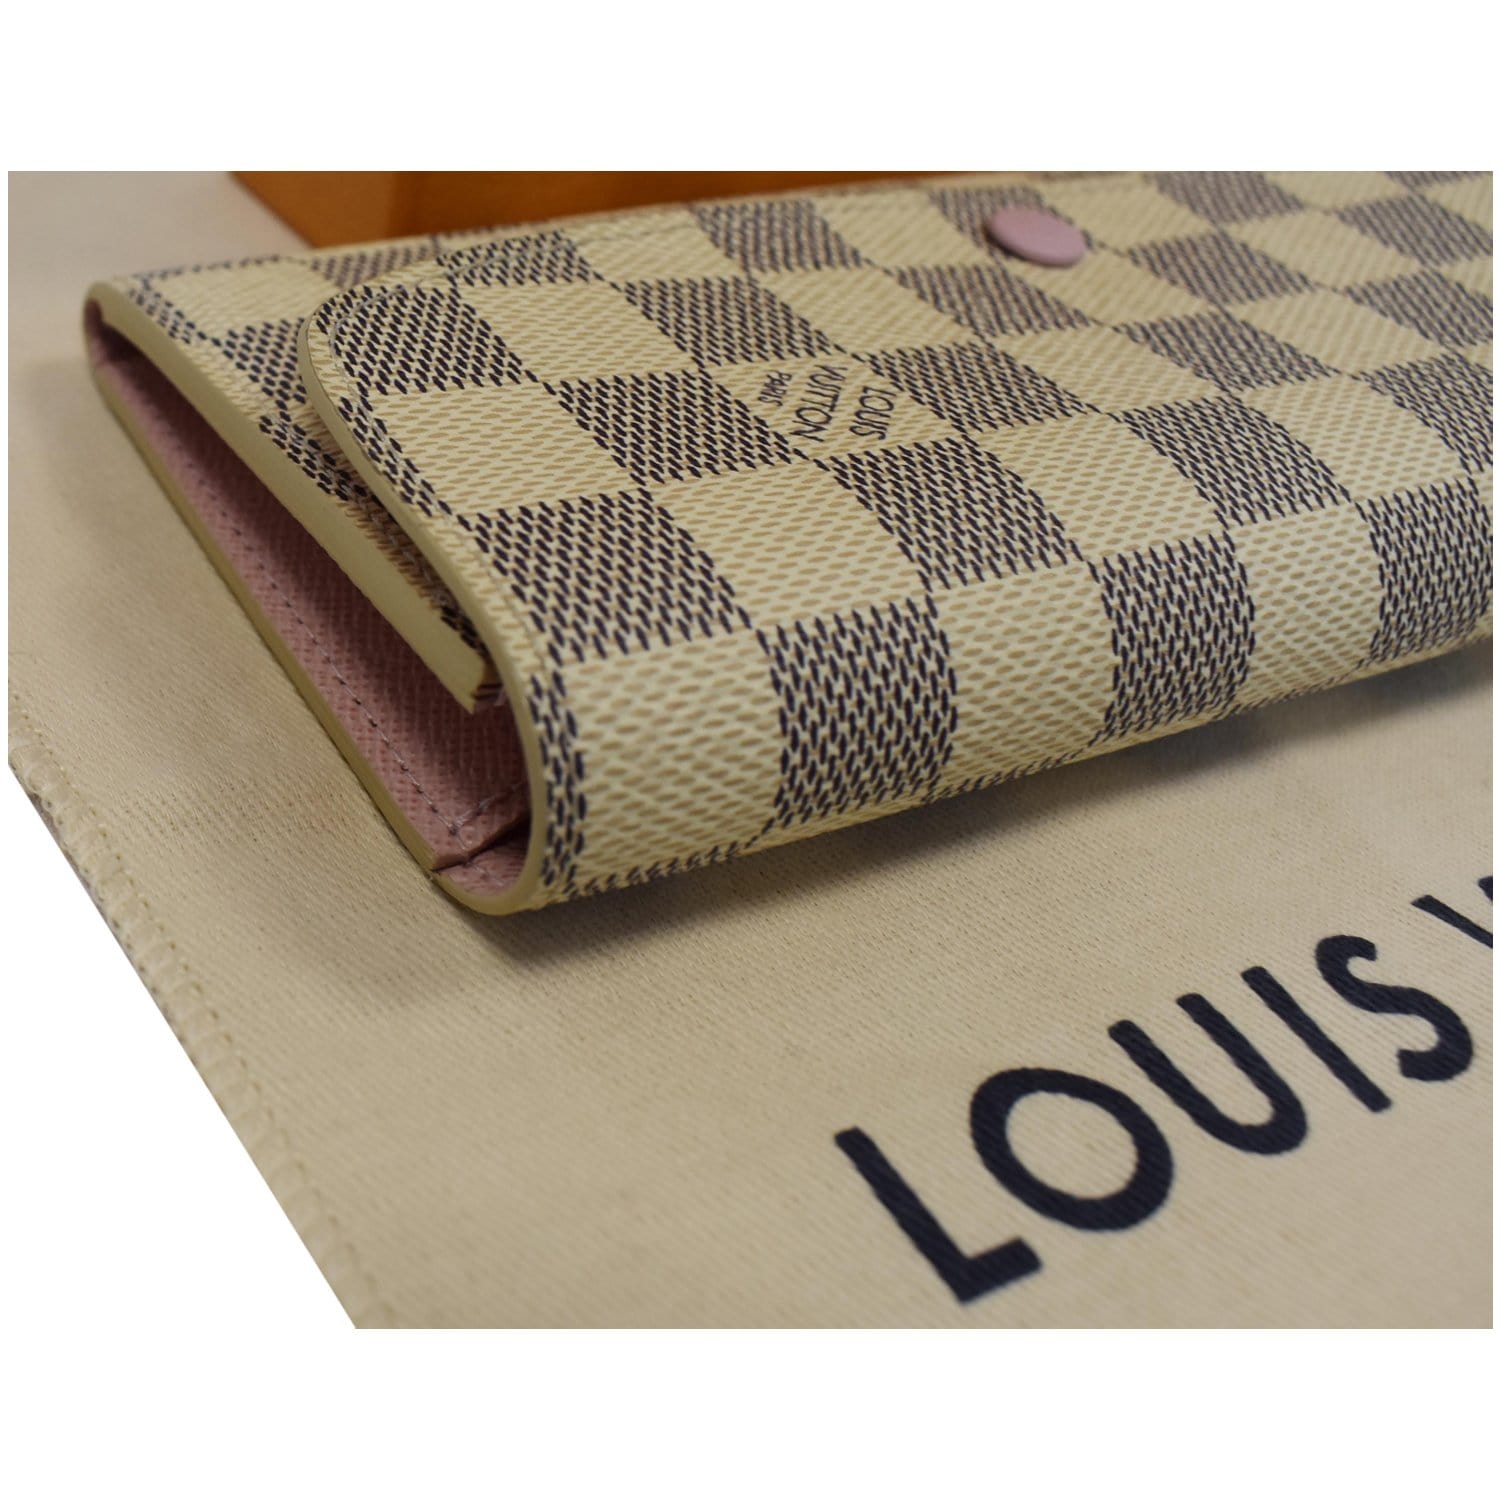 รีวิว Louis Vuitton Brazza Wallet Damier - White Brandname Review 